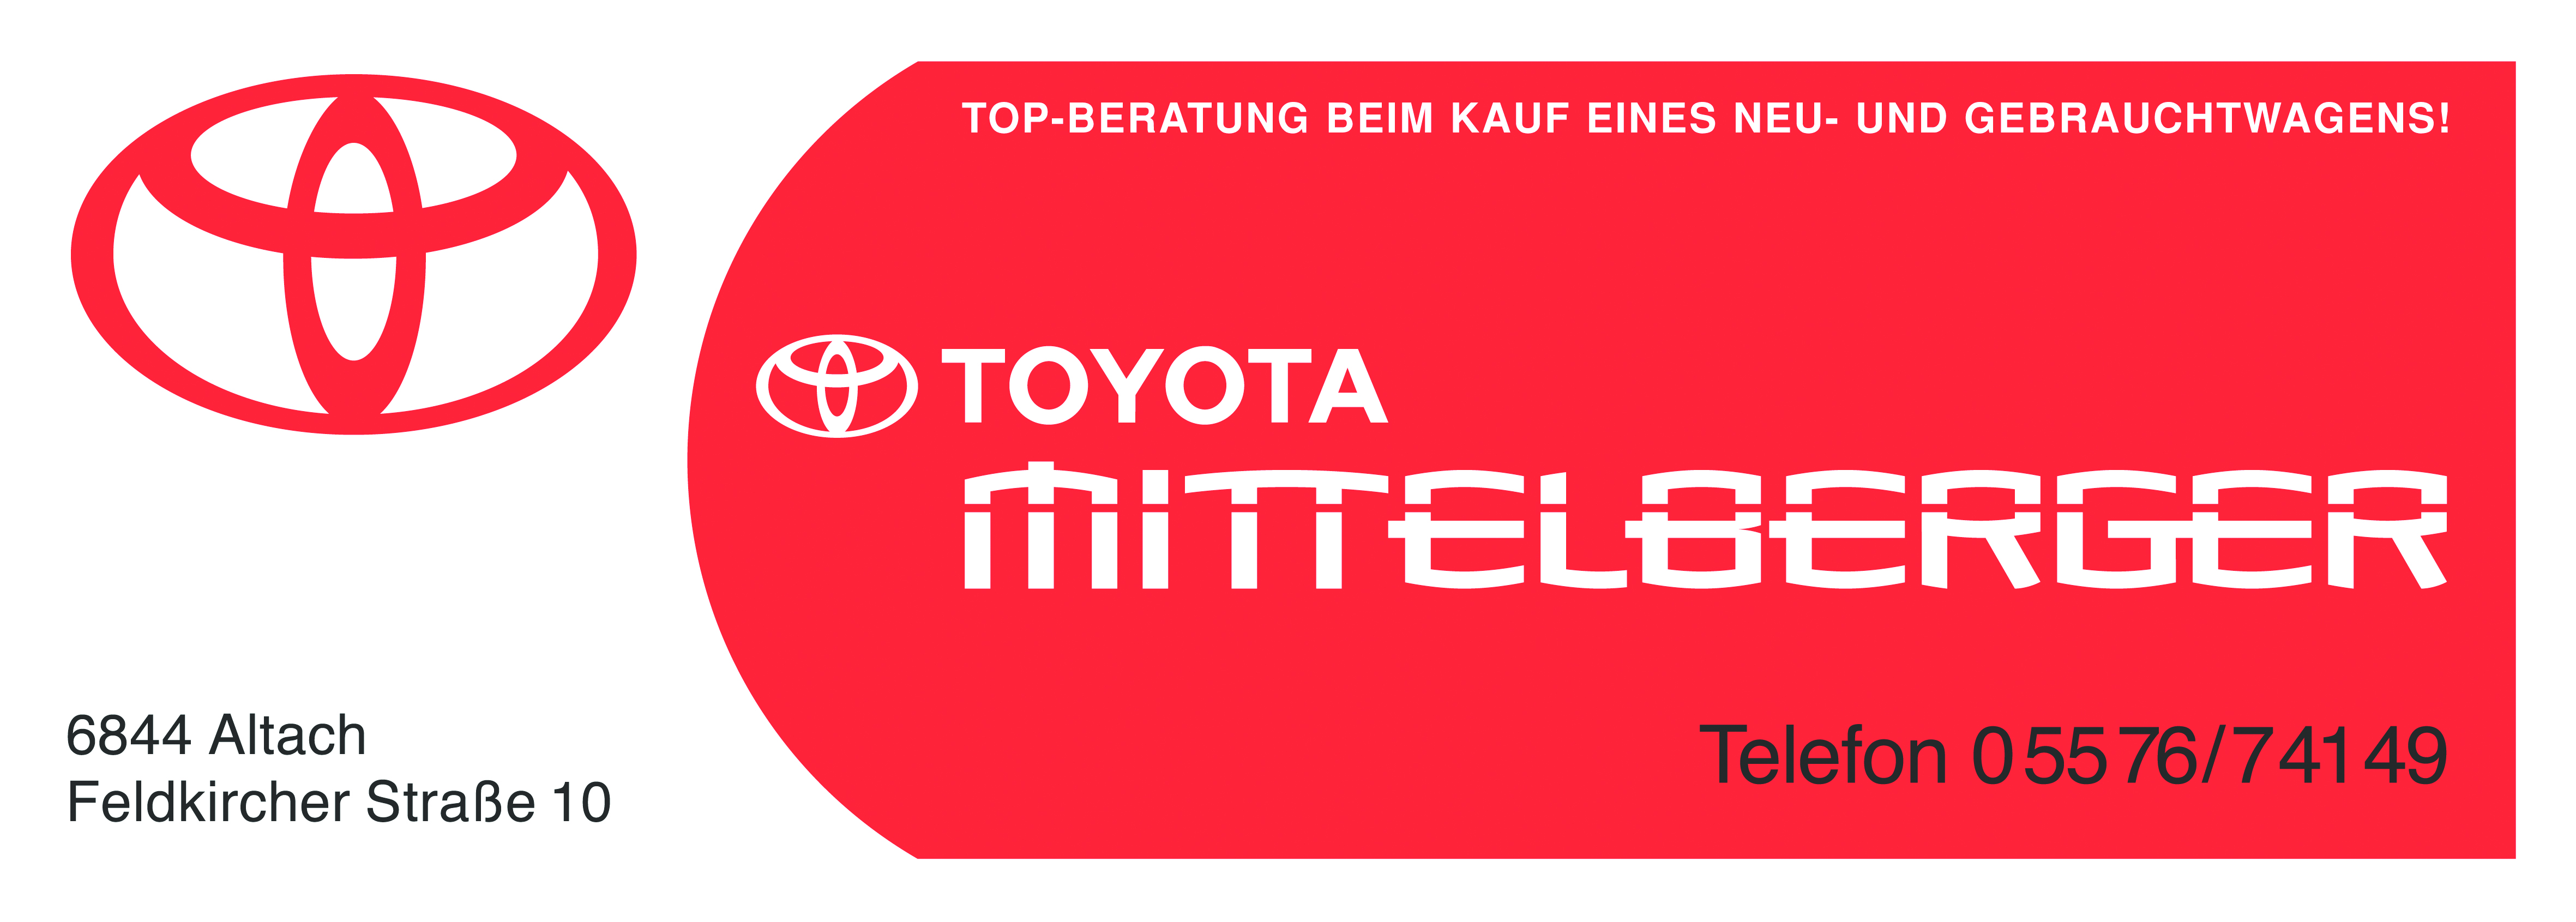 Toyota Mittelberger